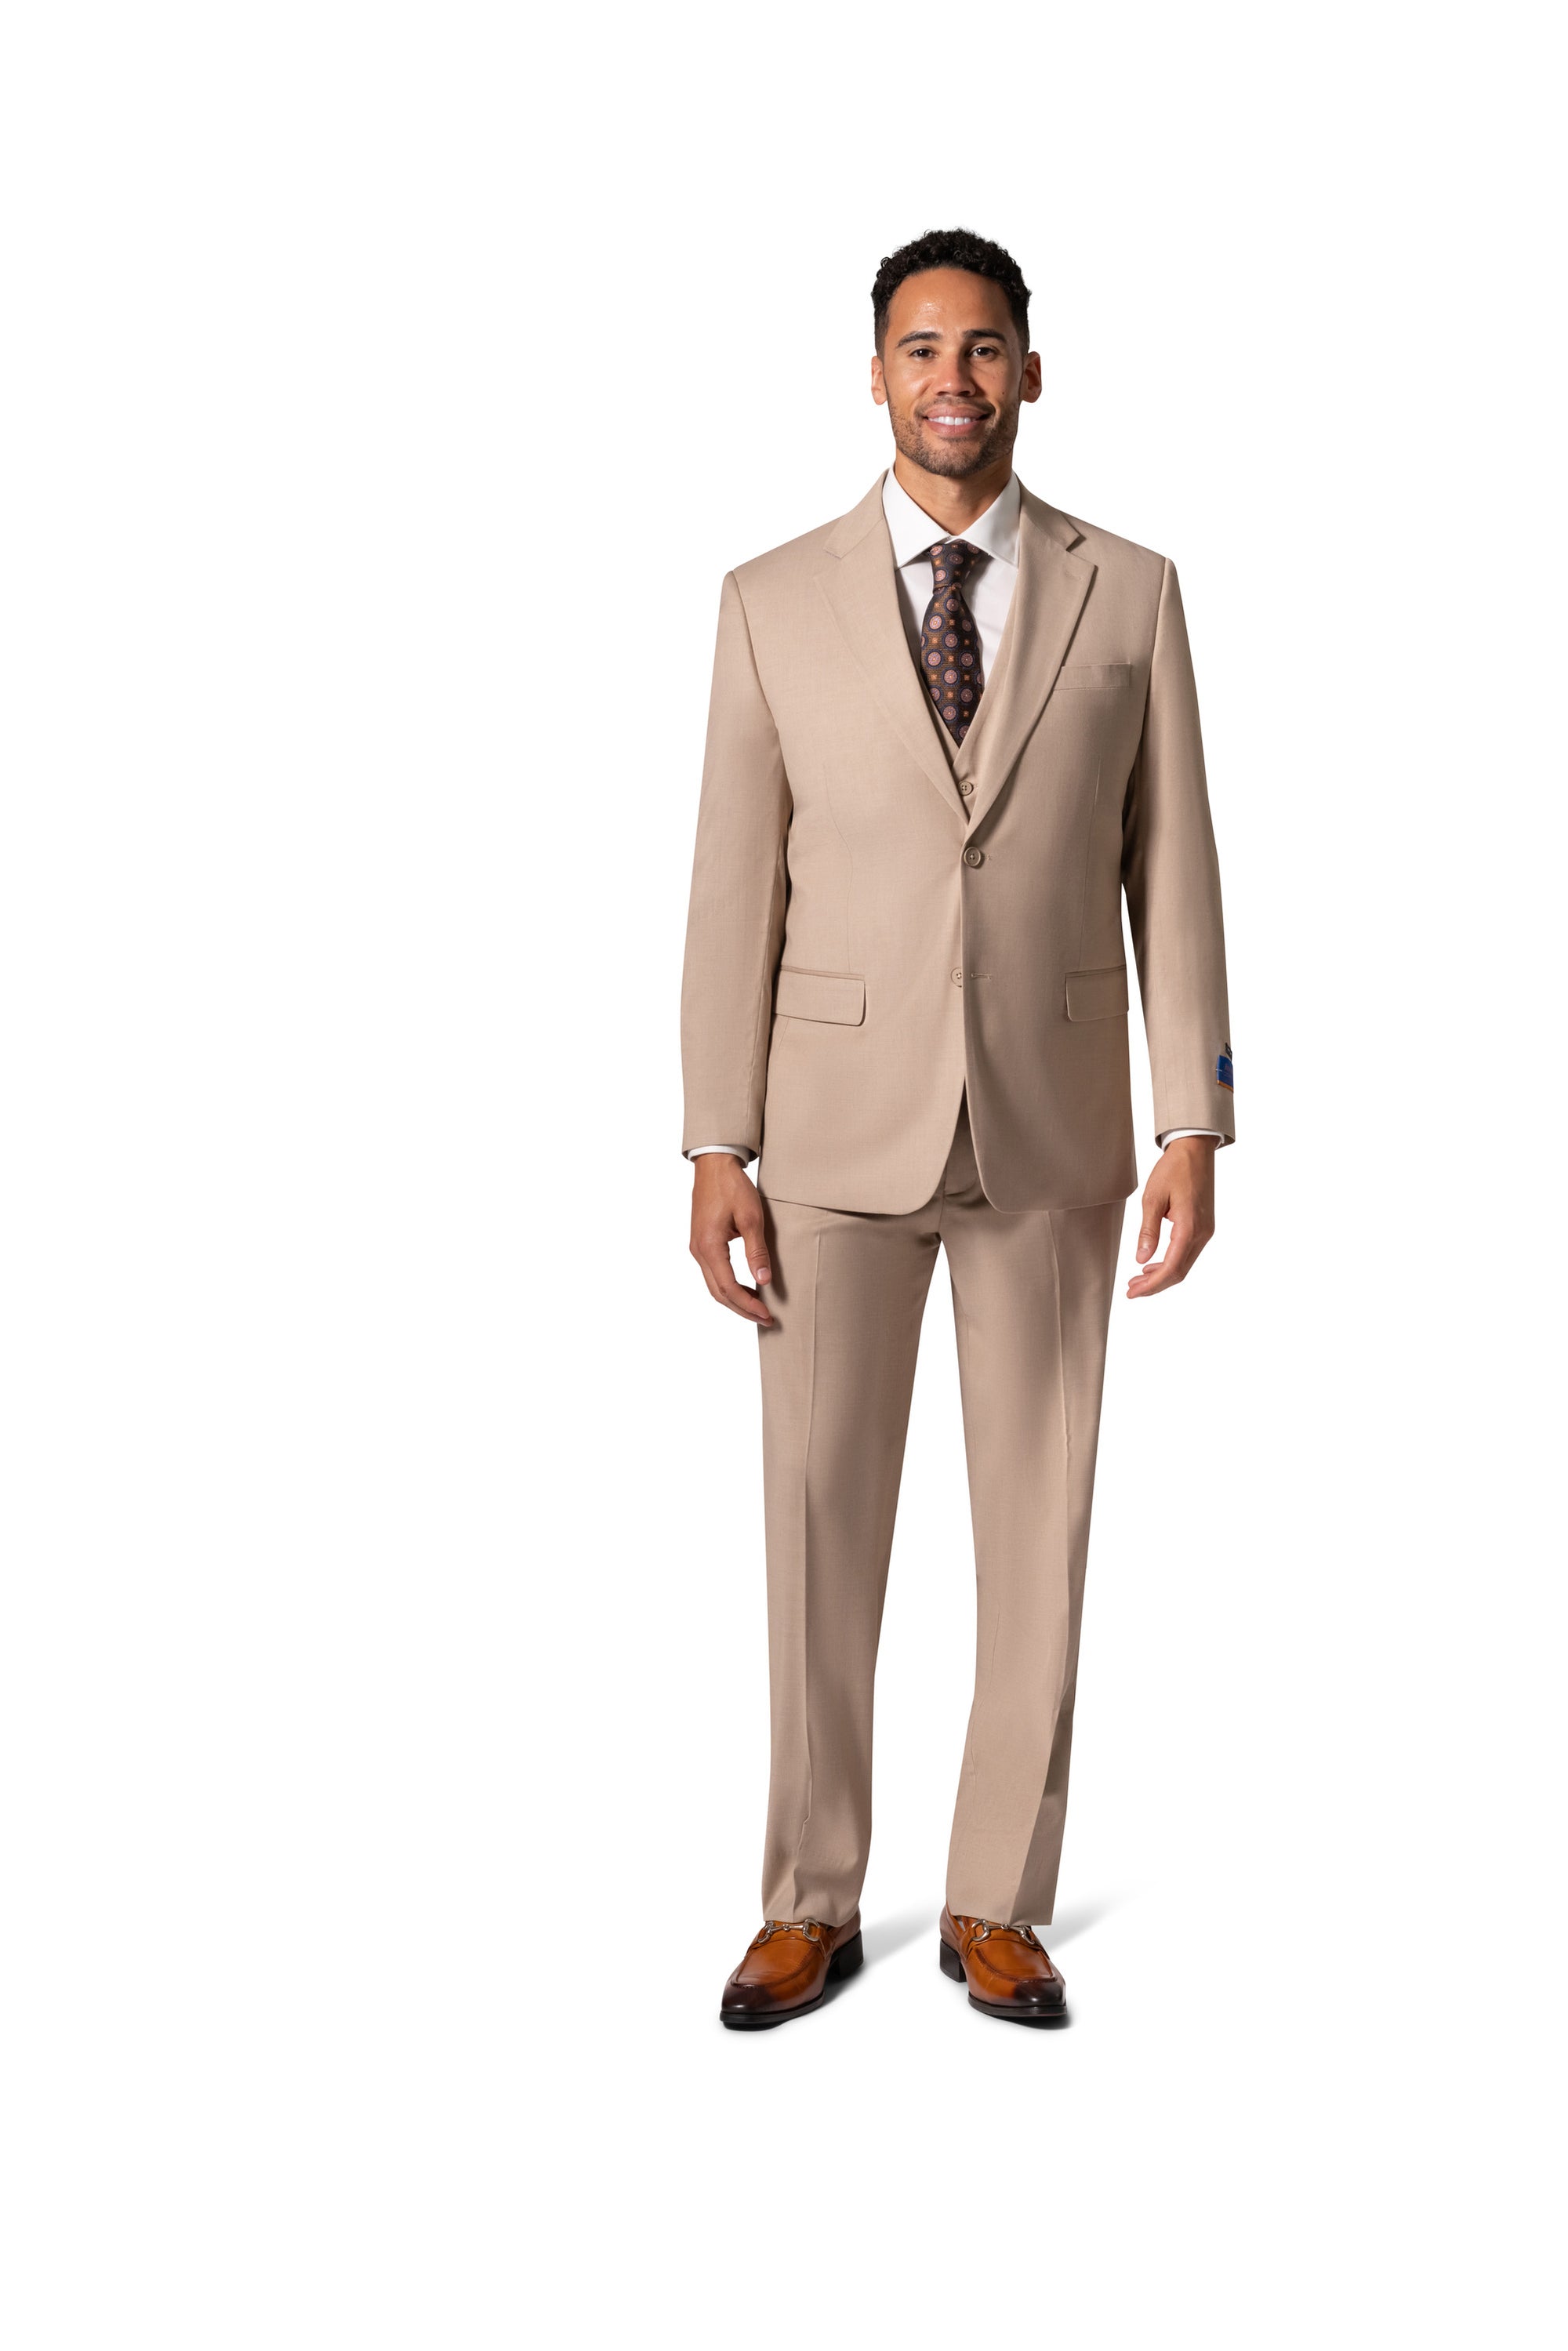 Berragamo MARCO UNI 3PC Notch Slim Suit - Tan